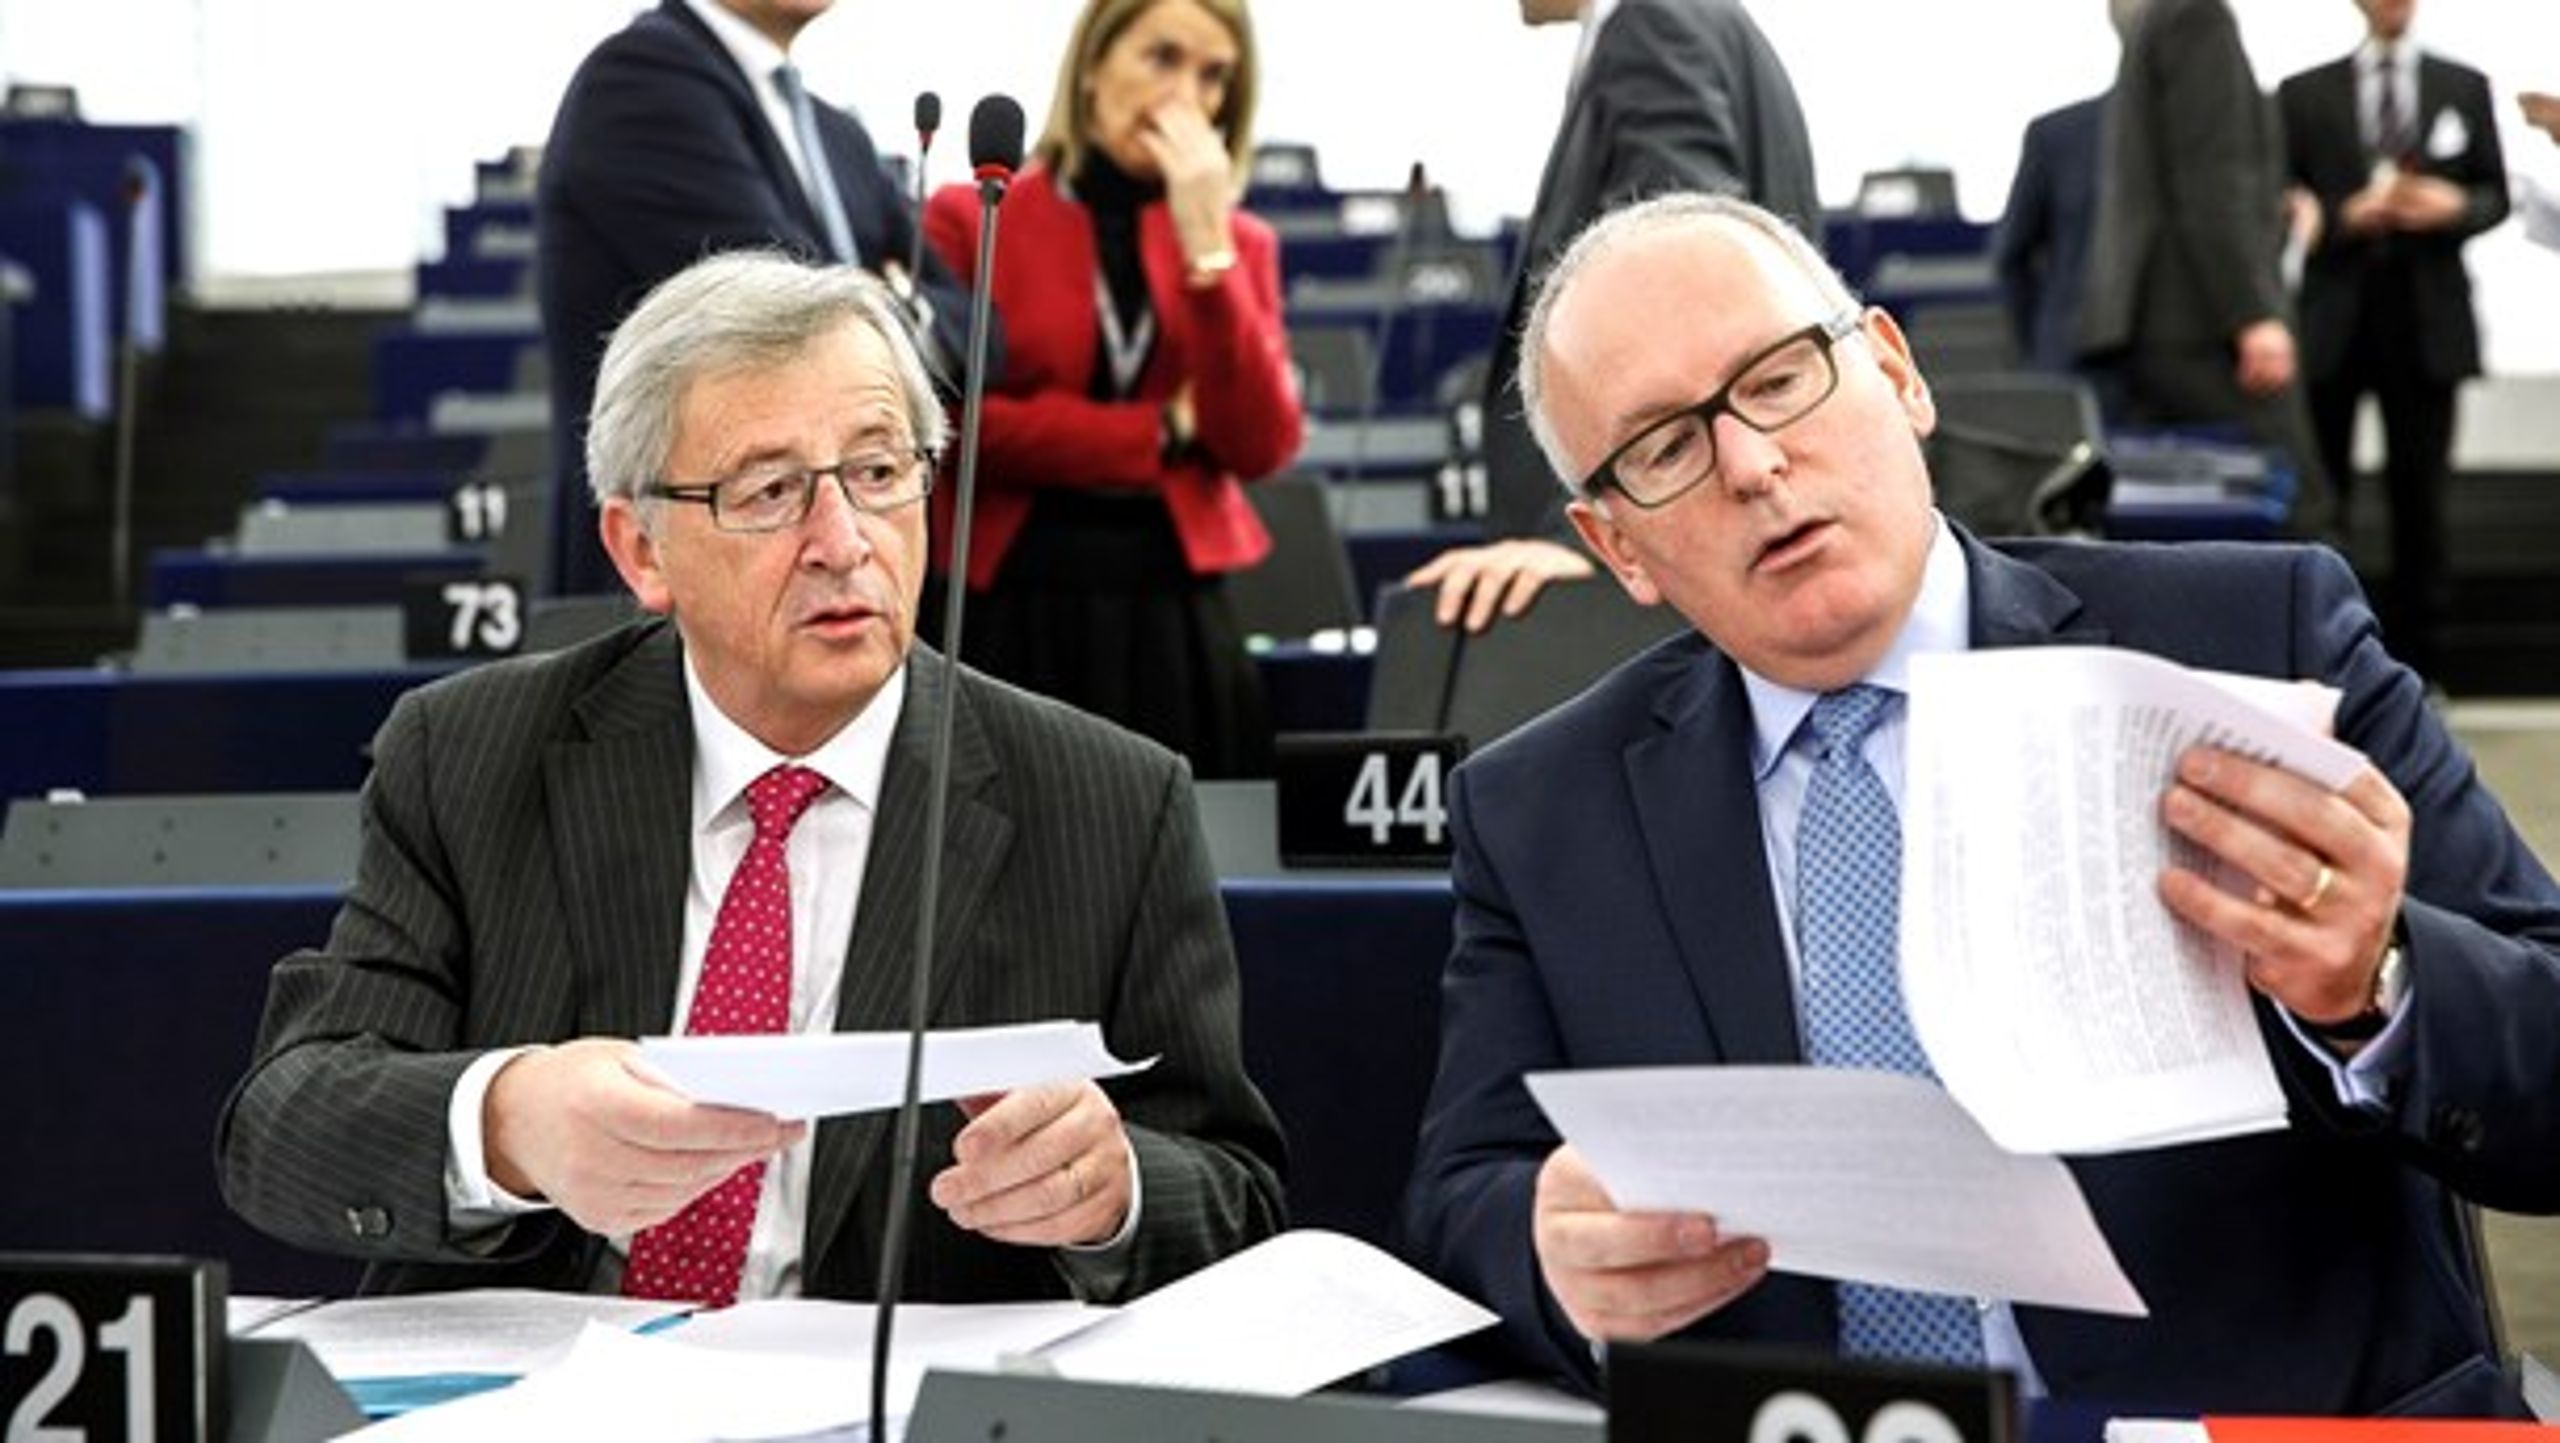 Kommissionsformand Jean-Claude Juncker og førstenæstformand Frans Timmermans har udset sig en række grønne fokusområder i 2017. Klimakvoter, cirkulær økonomi og affaldsregulering er blandt prioriteterne.